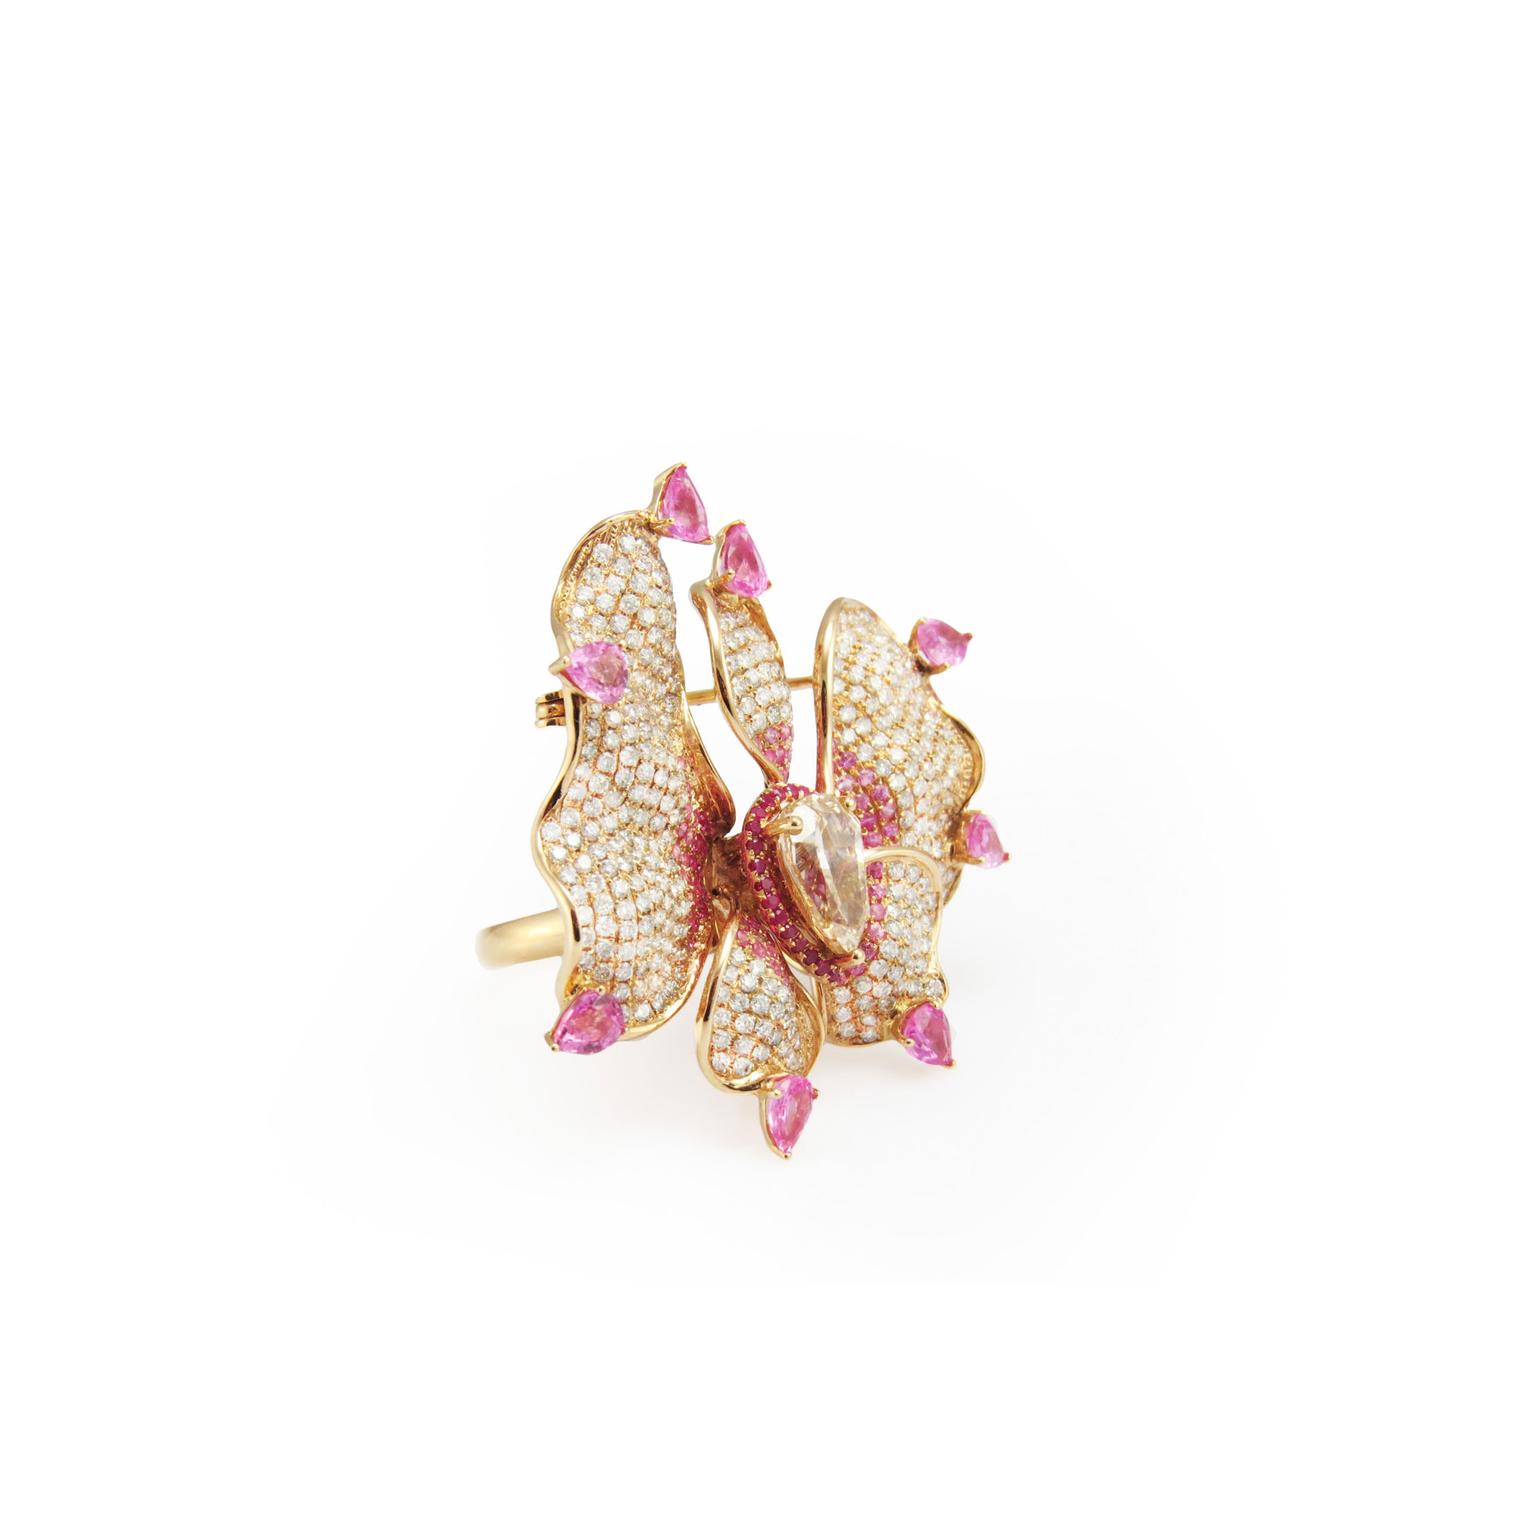 Fei Liu jewellery Orchid Flower ring brooch side